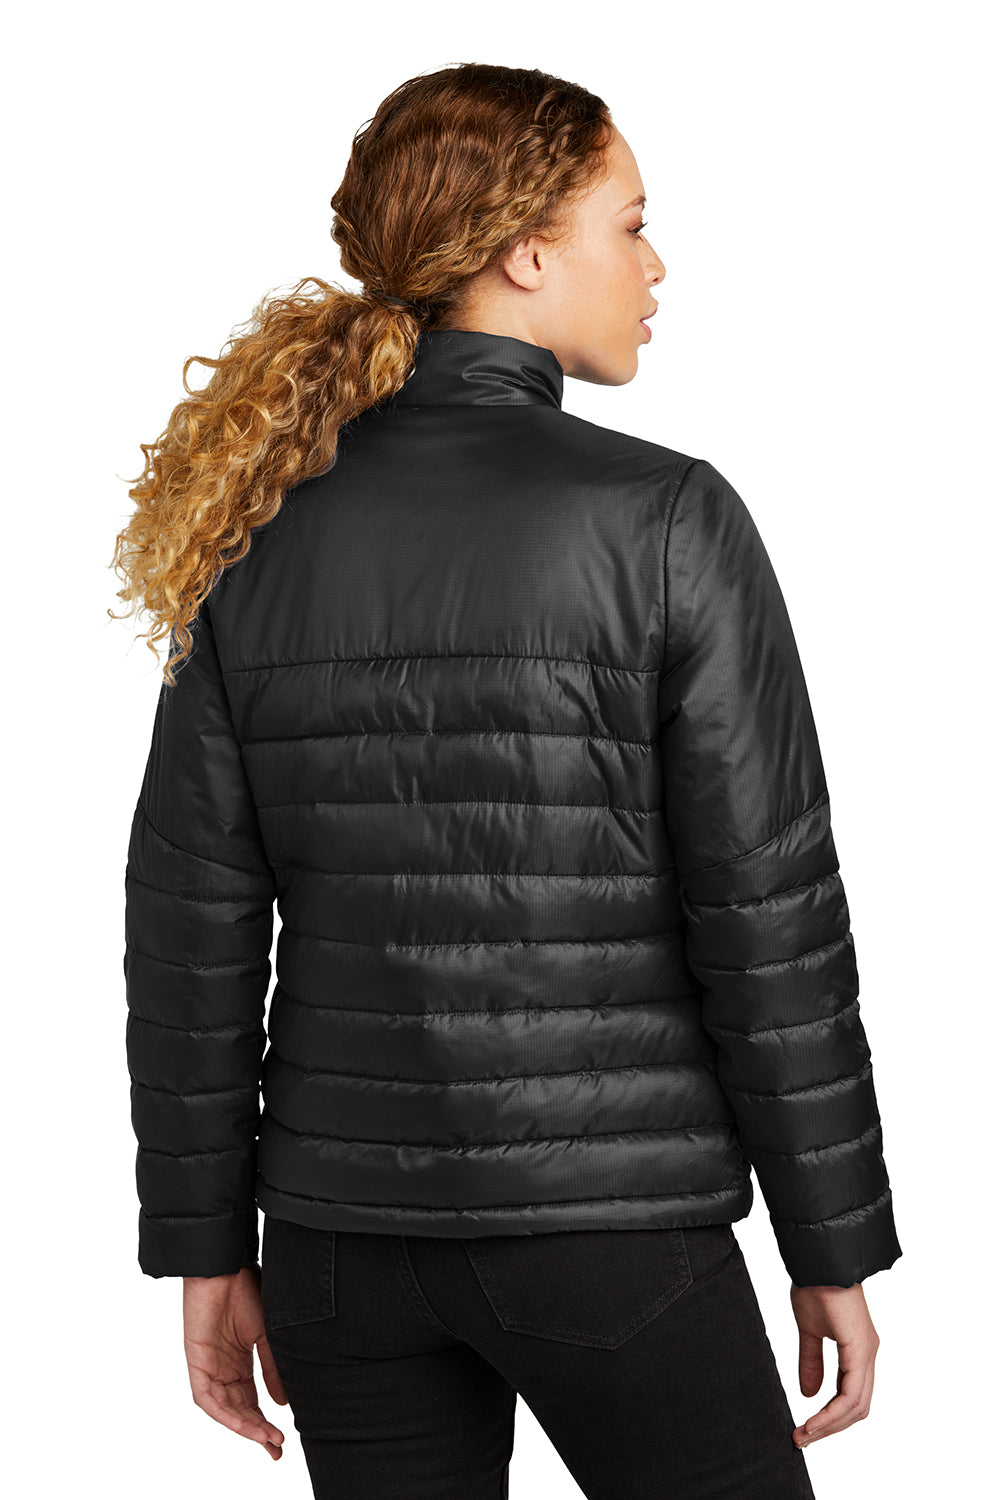 Eddie Bauer EB511 Womens Water Resistant Quilted Full Zip Jacket Deep Black Model Back